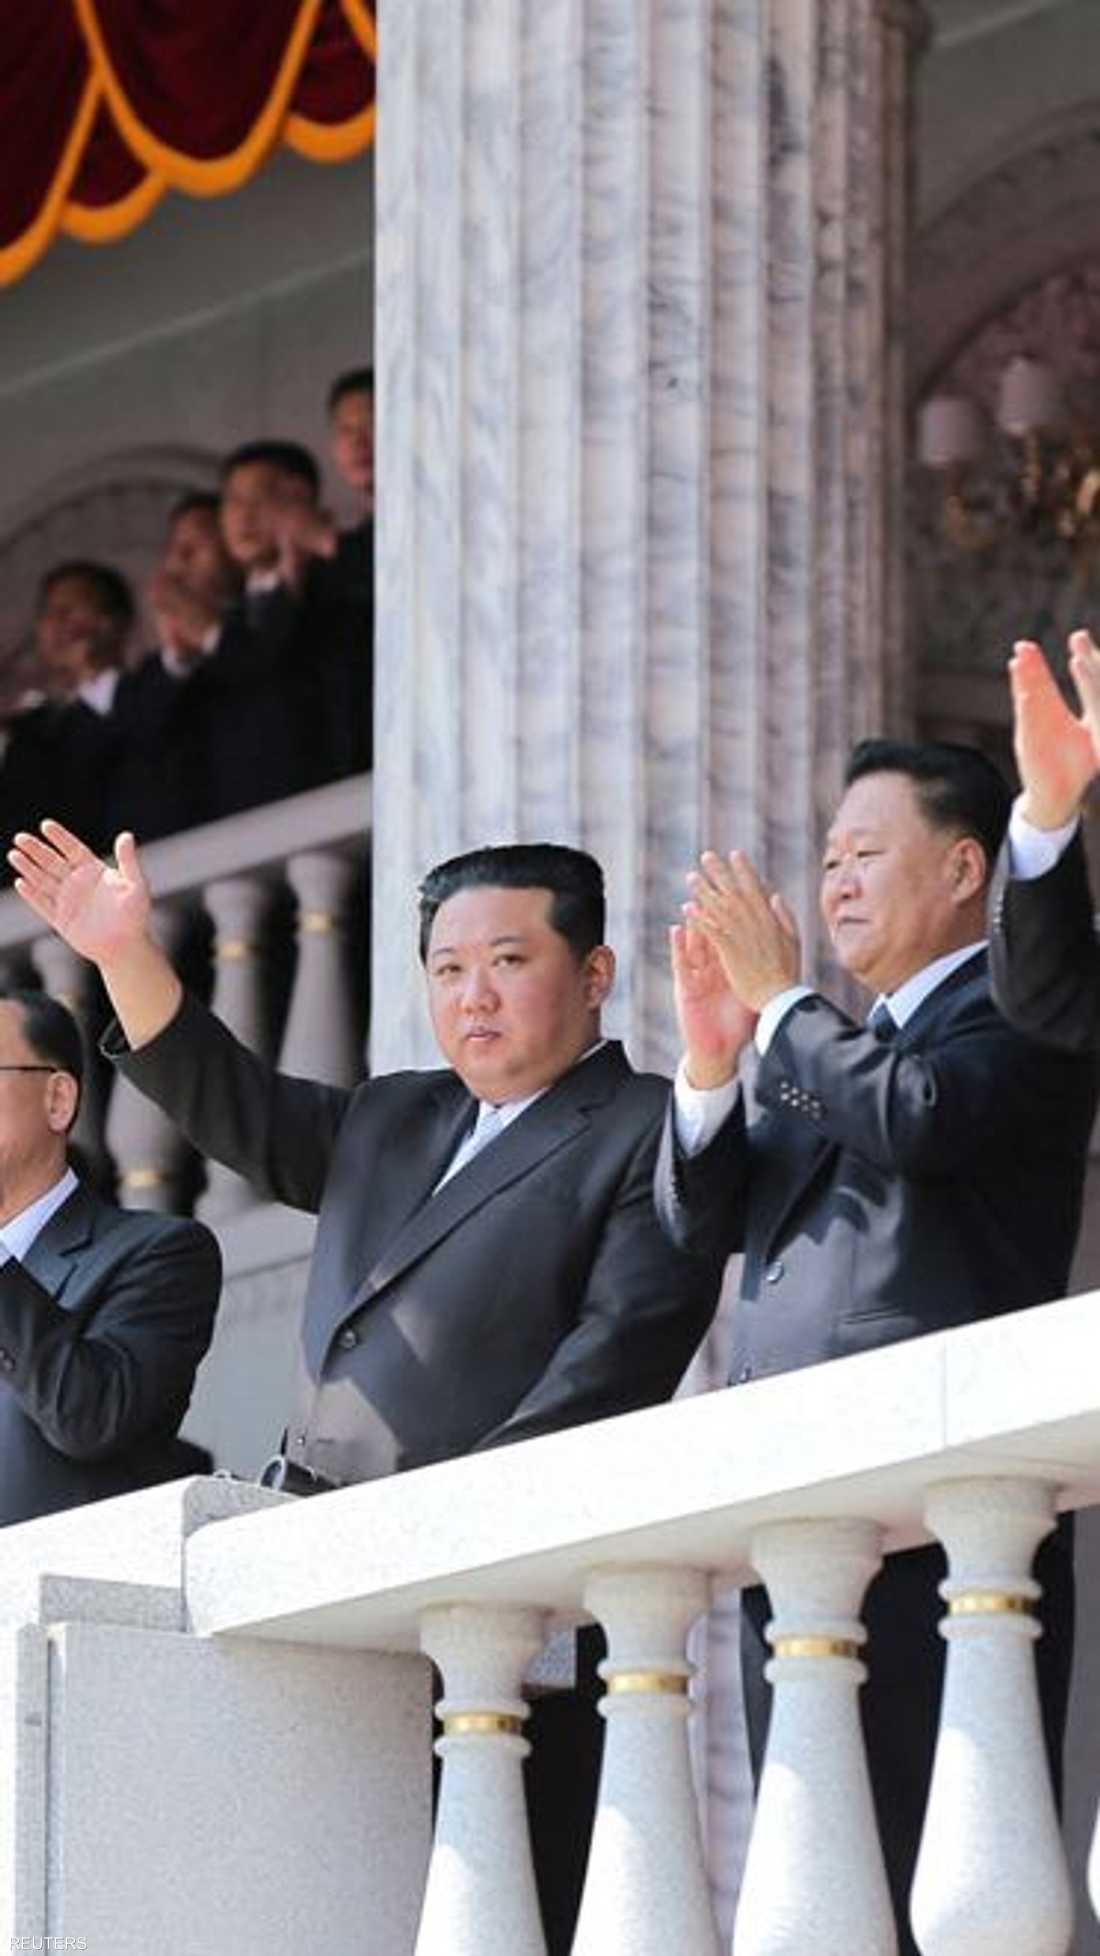 حضر الزعيم الكوري الشمالي كيم عرضا مدنيا ضخما